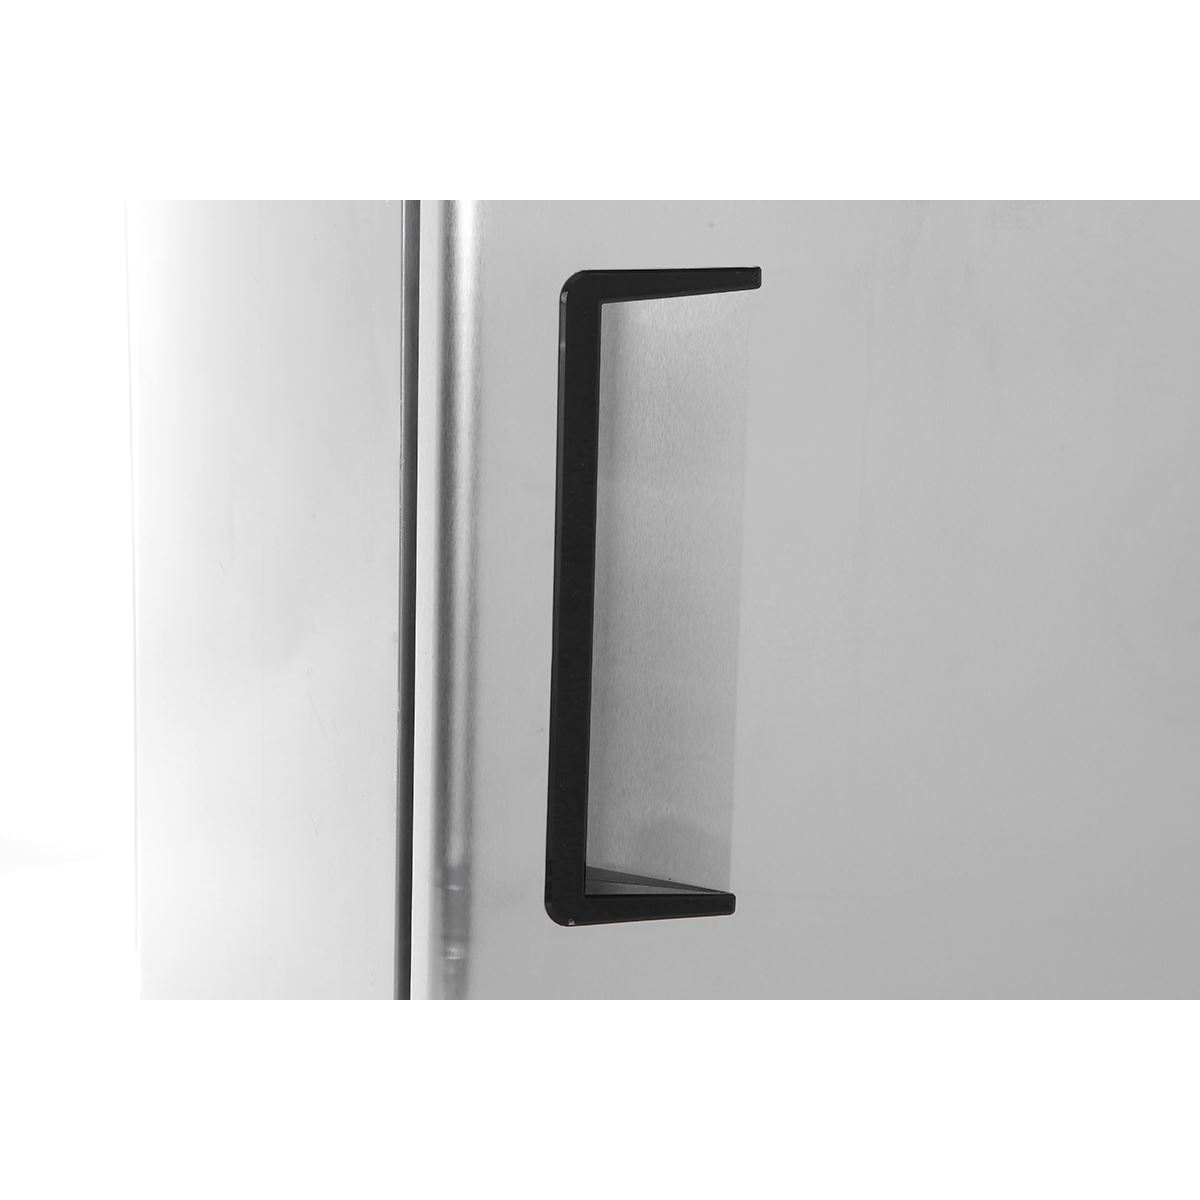 Atosa MBF8501GR One Door 27" Reach-In Freezer Bottom Mount Series - TheChefStore.Com